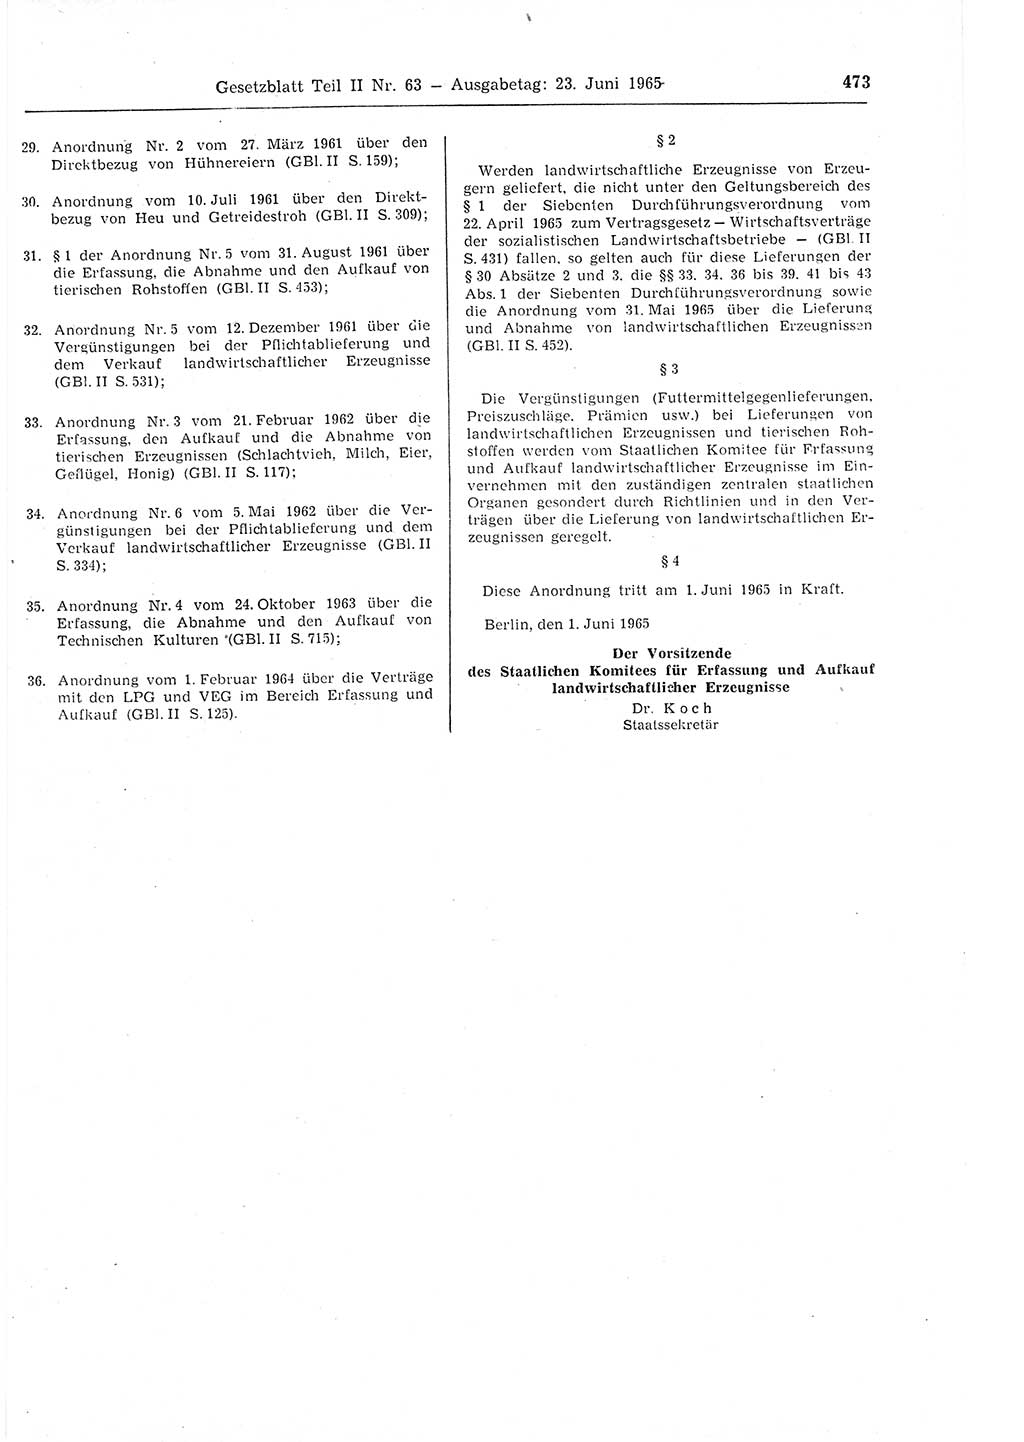 Gesetzblatt (GBl.) der Deutschen Demokratischen Republik (DDR) Teil ⅠⅠ 1965, Seite 473 (GBl. DDR ⅠⅠ 1965, S. 473)